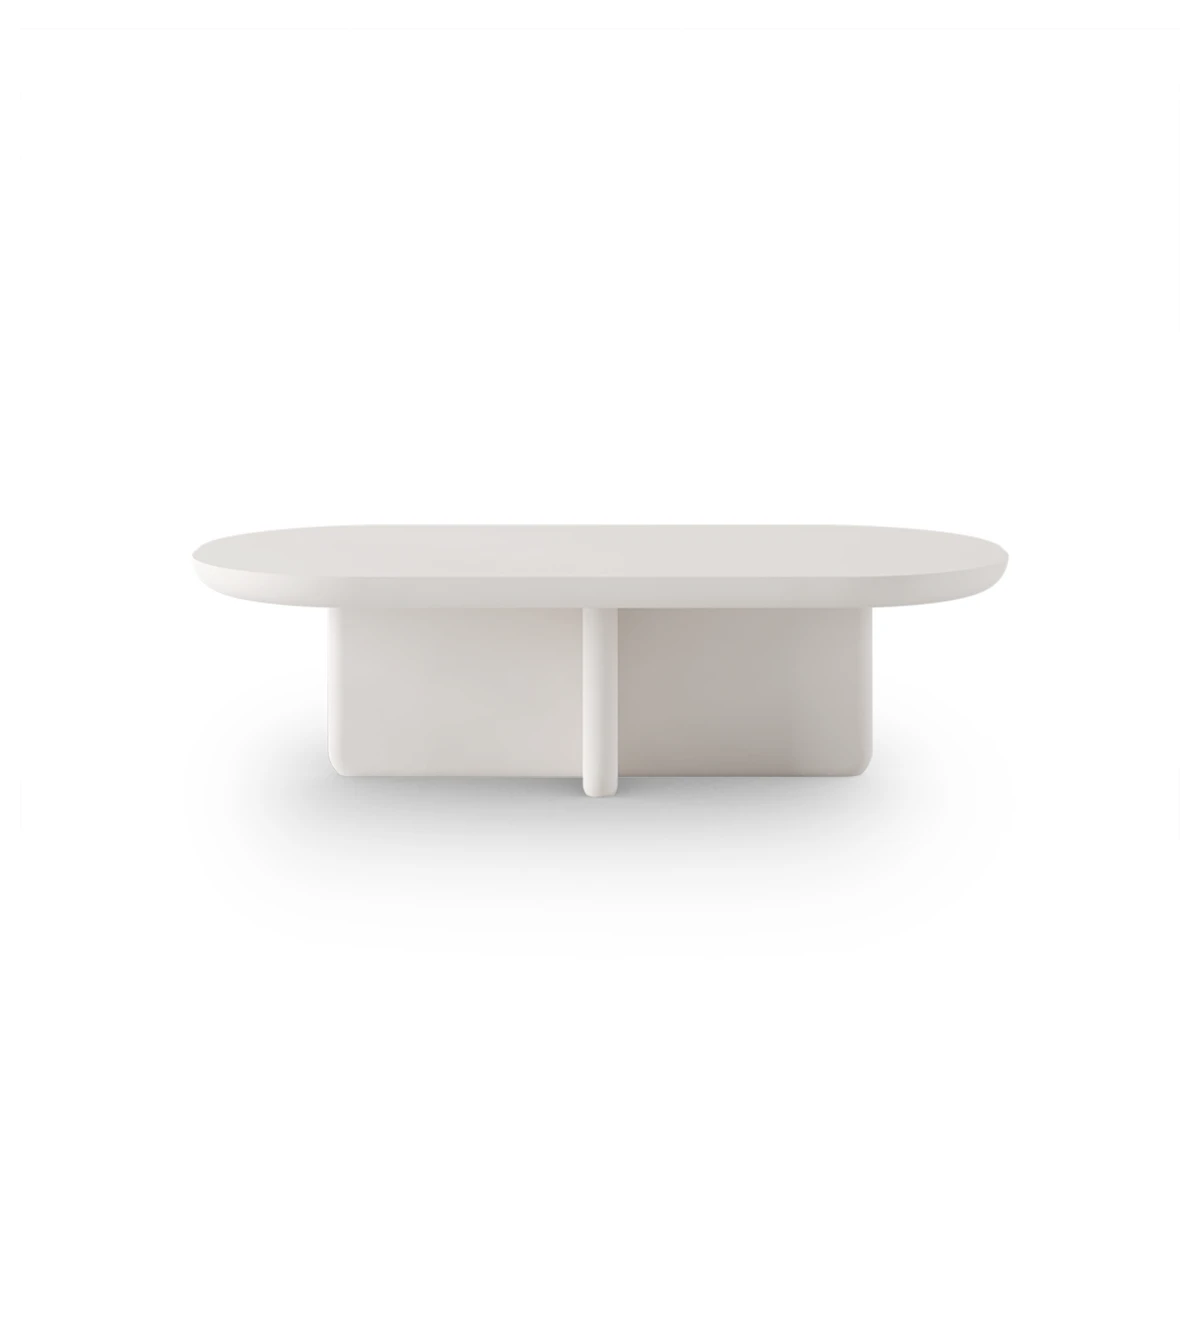 Table basse Mónaco rectangulaire, en laque perlée, 120 x 60 cm.